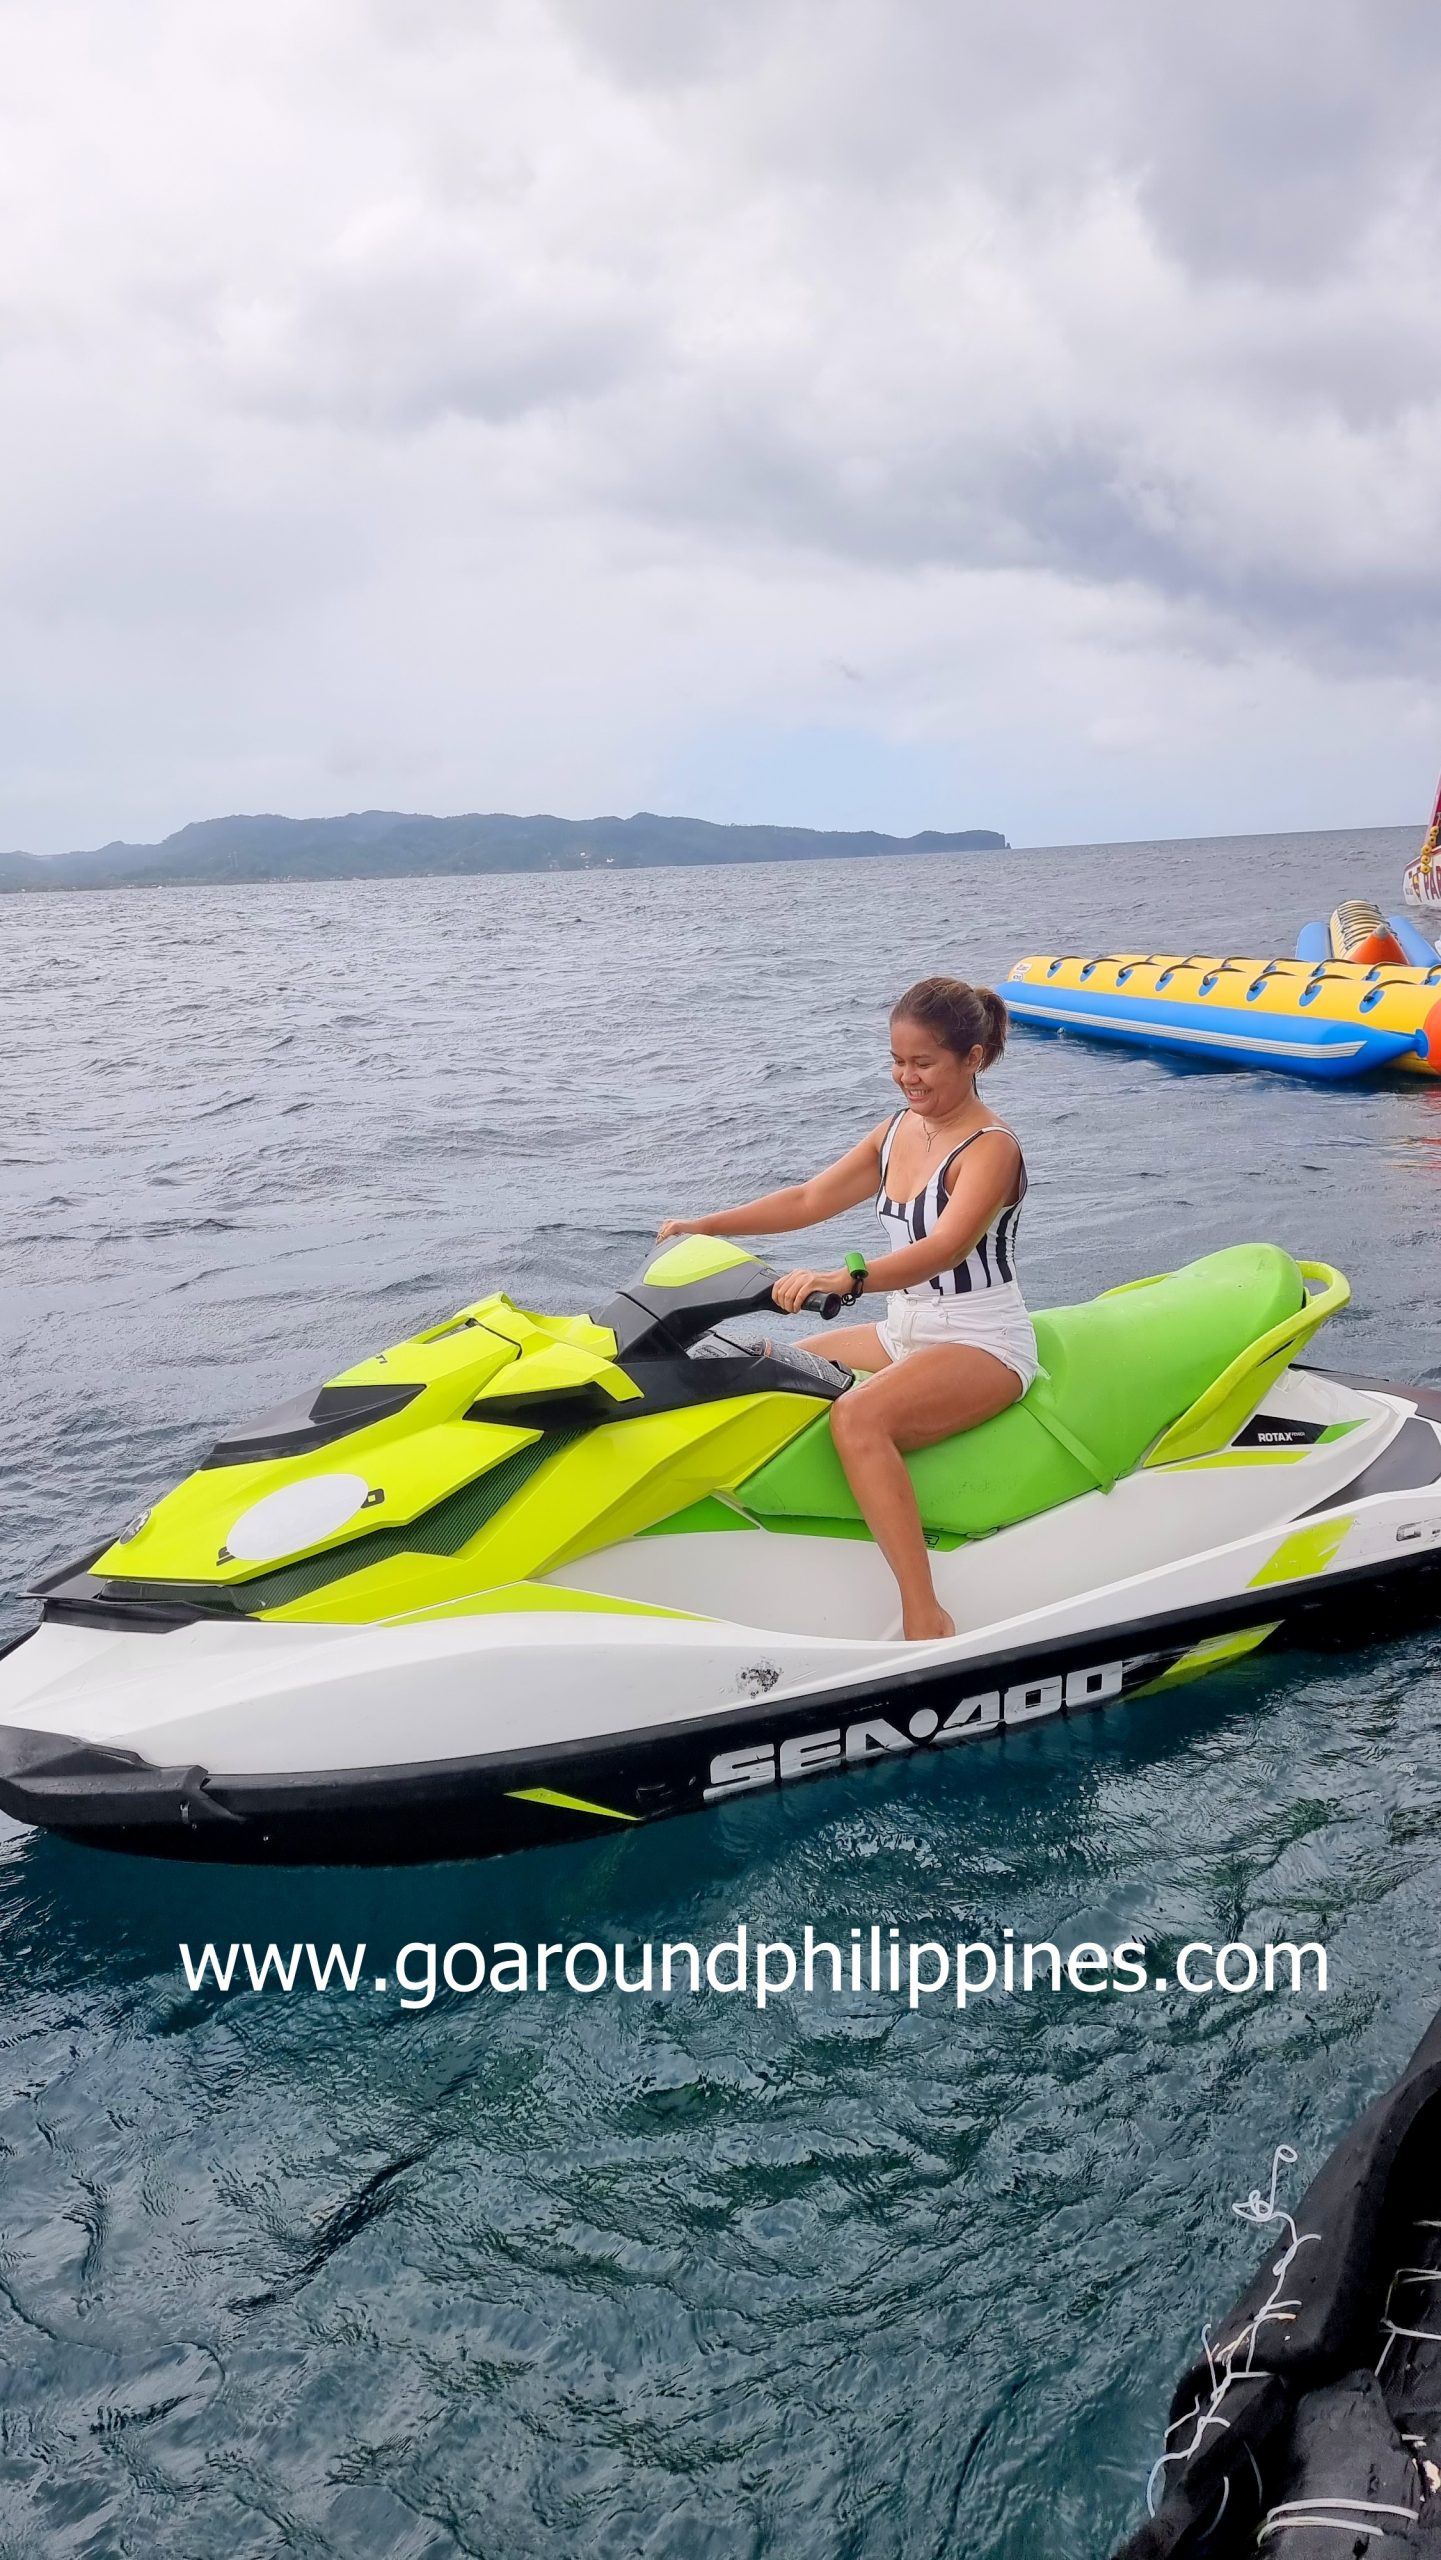 Top 13 Best Water Activities To Do in Boracay Go Around Philippines